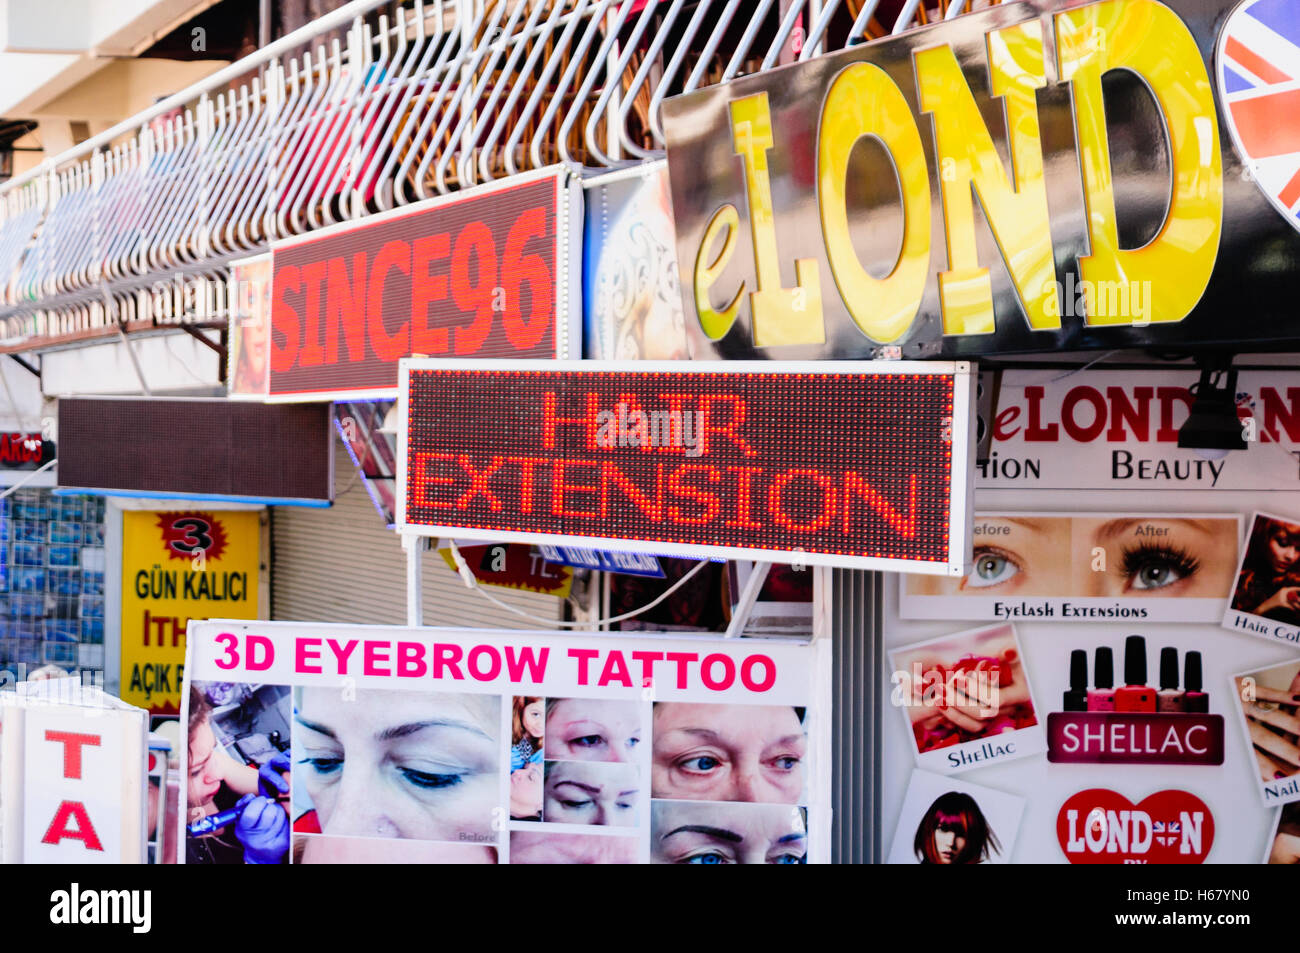 Un sacco di segni al di fuori di un parrucchiere pubblicità le estensioni di capelli, 3D sopracciglio tattoo, smalto per unghie ecc. Foto Stock